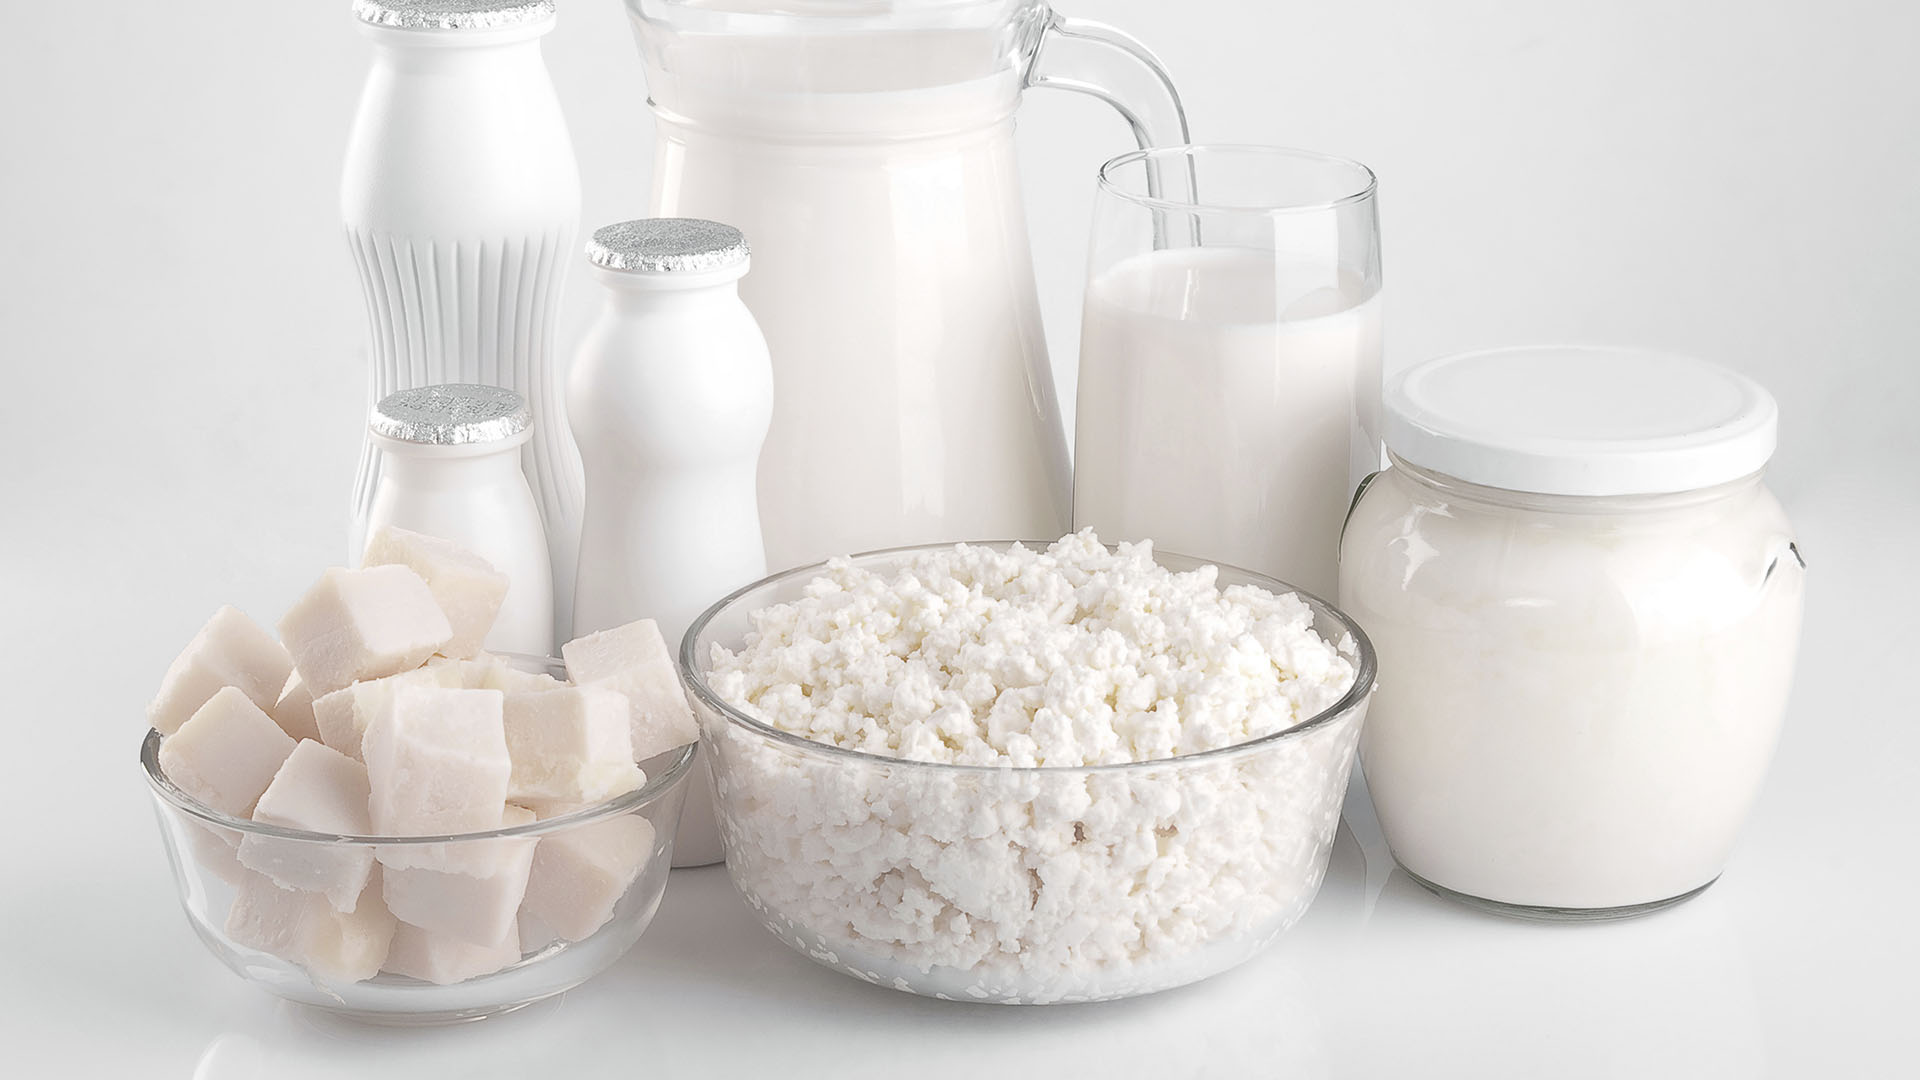 Si hay una condición de intolerancia a los productos derivados de la leche sí podría perderse peso